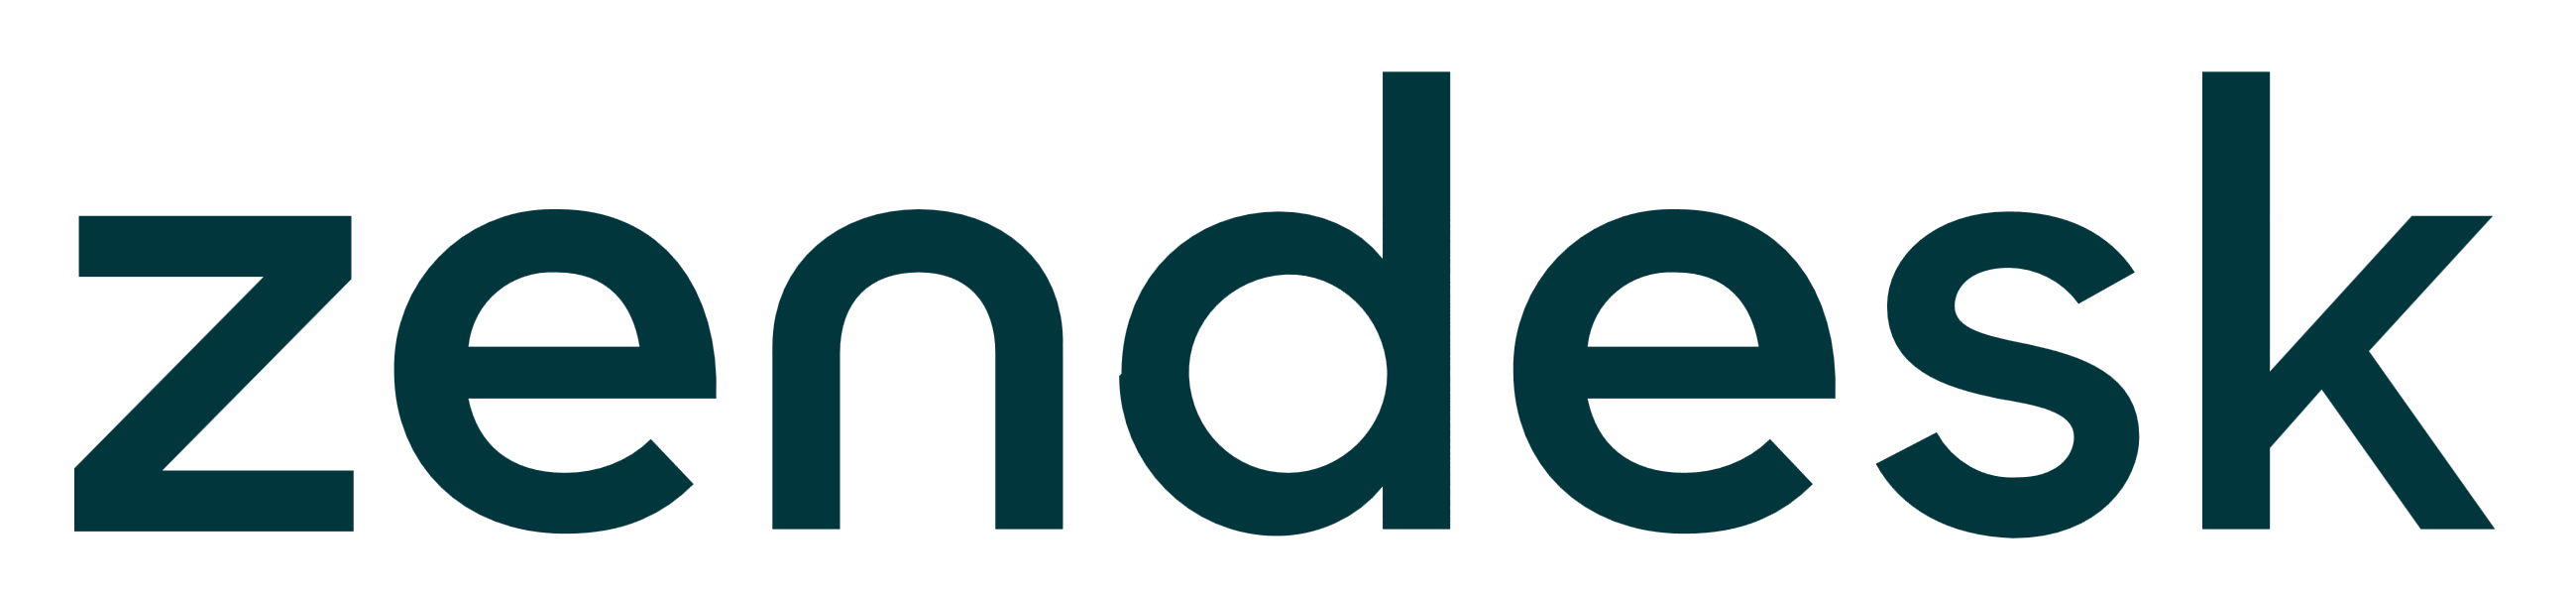 integrations/zendesk-logo.png